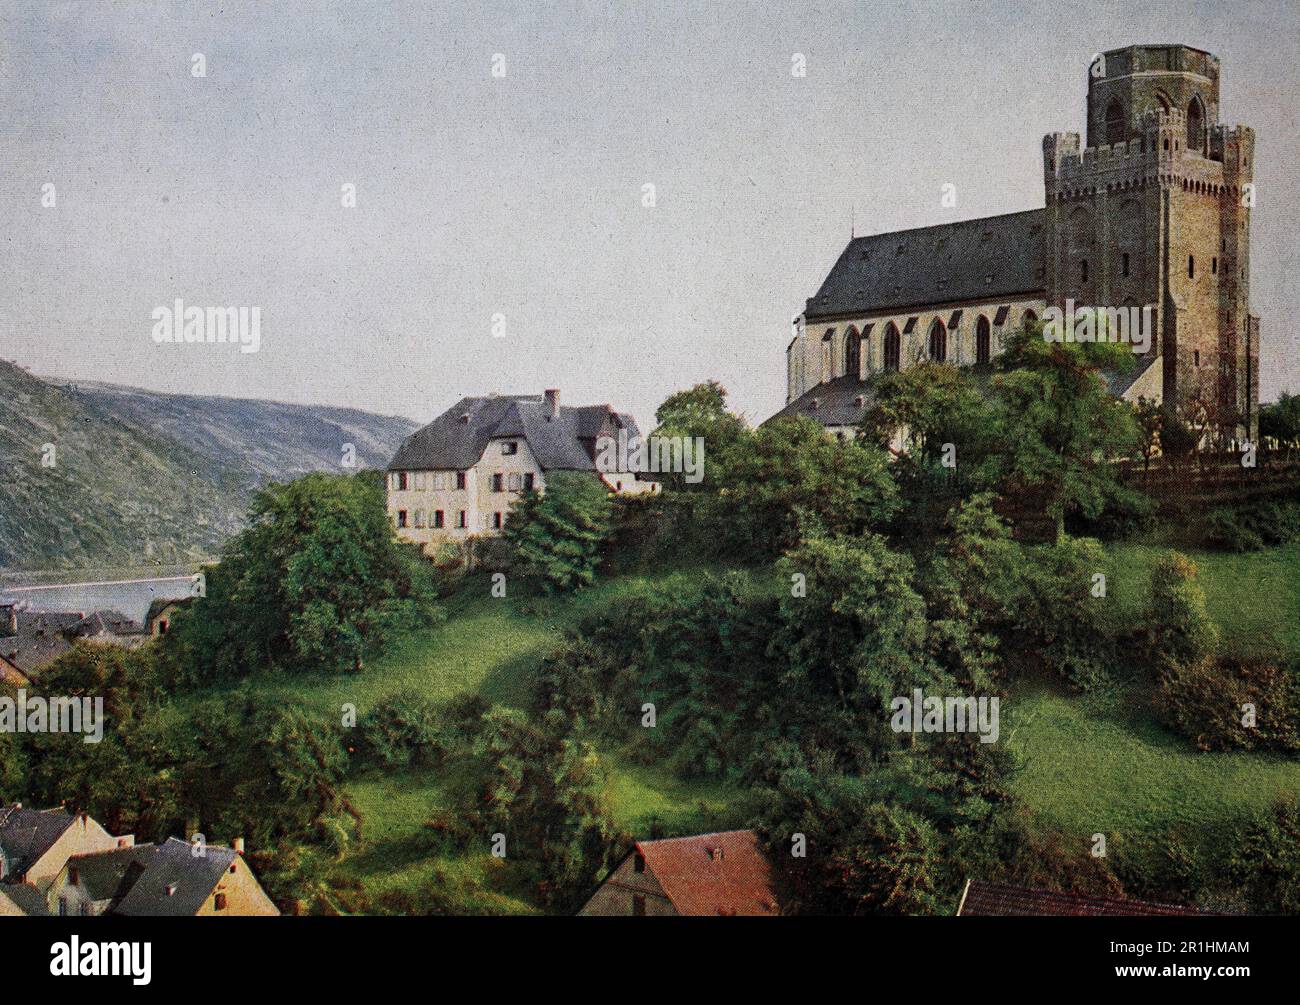 Die Martinskirche in Oberwesel im Jahre 1910, Rheinland-Pfalz, Fotografie, ristorante digitale Reproduktion einer Originalvorlage aus dem frühen 20. Jahrhundert, genaues Originalatum nicht bekannt Foto Stock